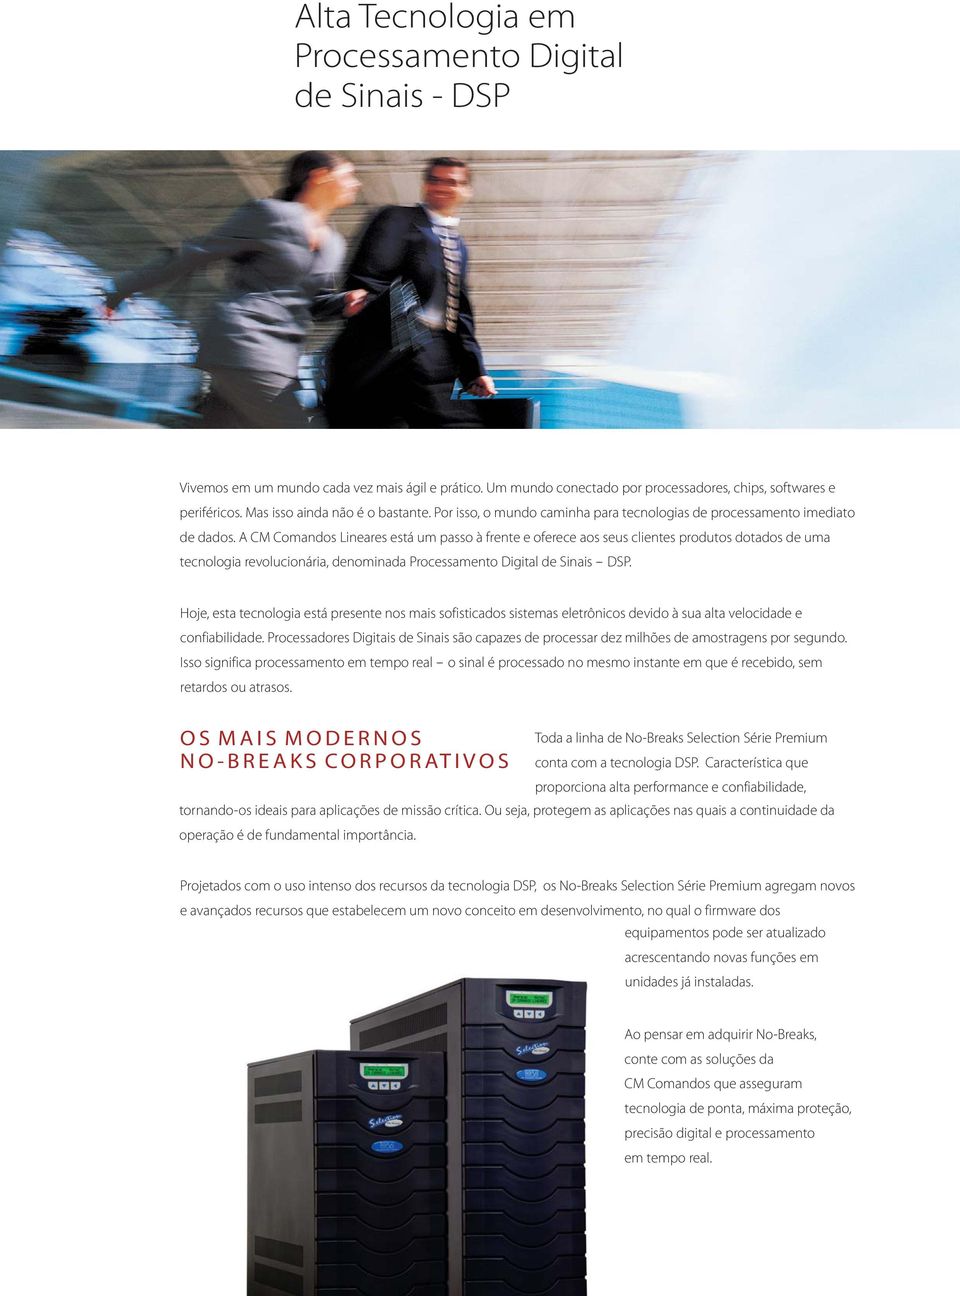 A CM Comandos Lineares está um passo à frente e oferece aos seus clientes produtos dotados de uma tecnologia revolucionária, denominada Processamento Digital de Sinais -- DSP.